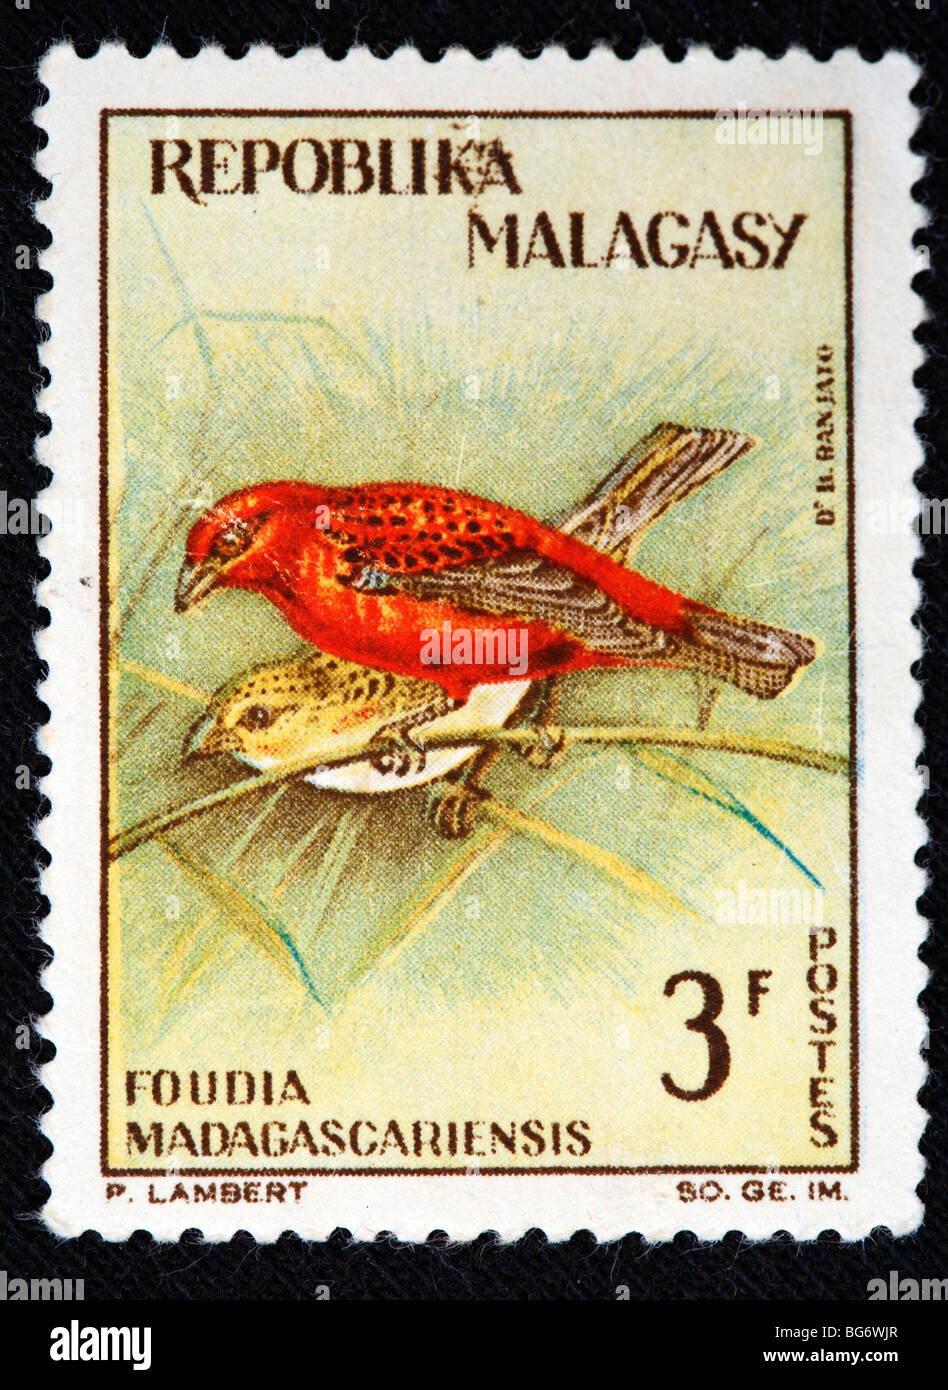 Foundia madagascariensis, timbre-poste, Madagascar (Madagascar) Banque D'Images